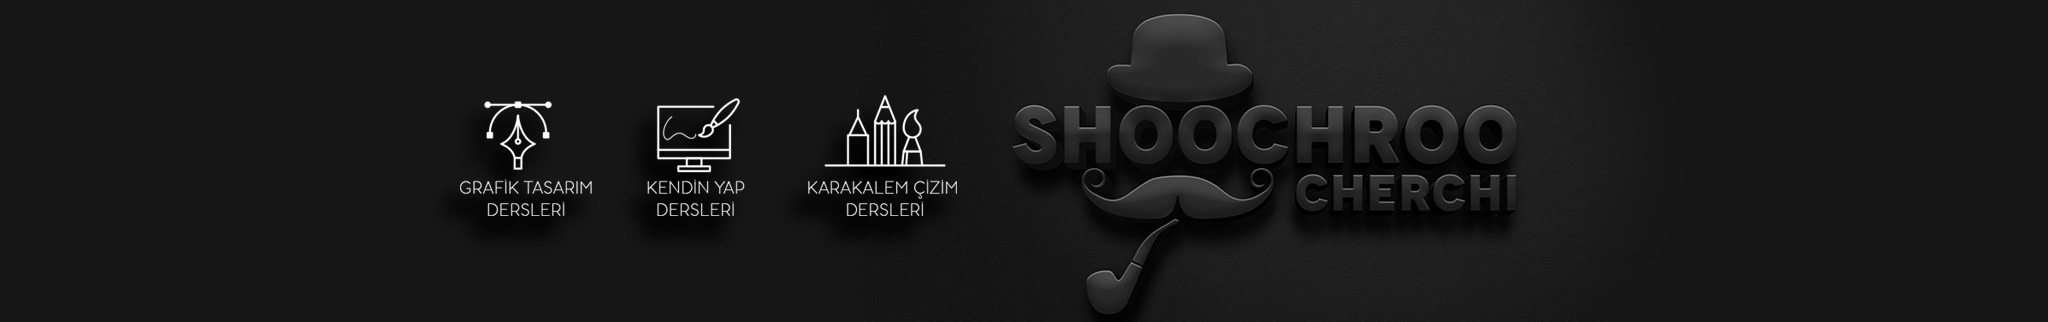 Baner profilu użytkownika şükrü çerçi